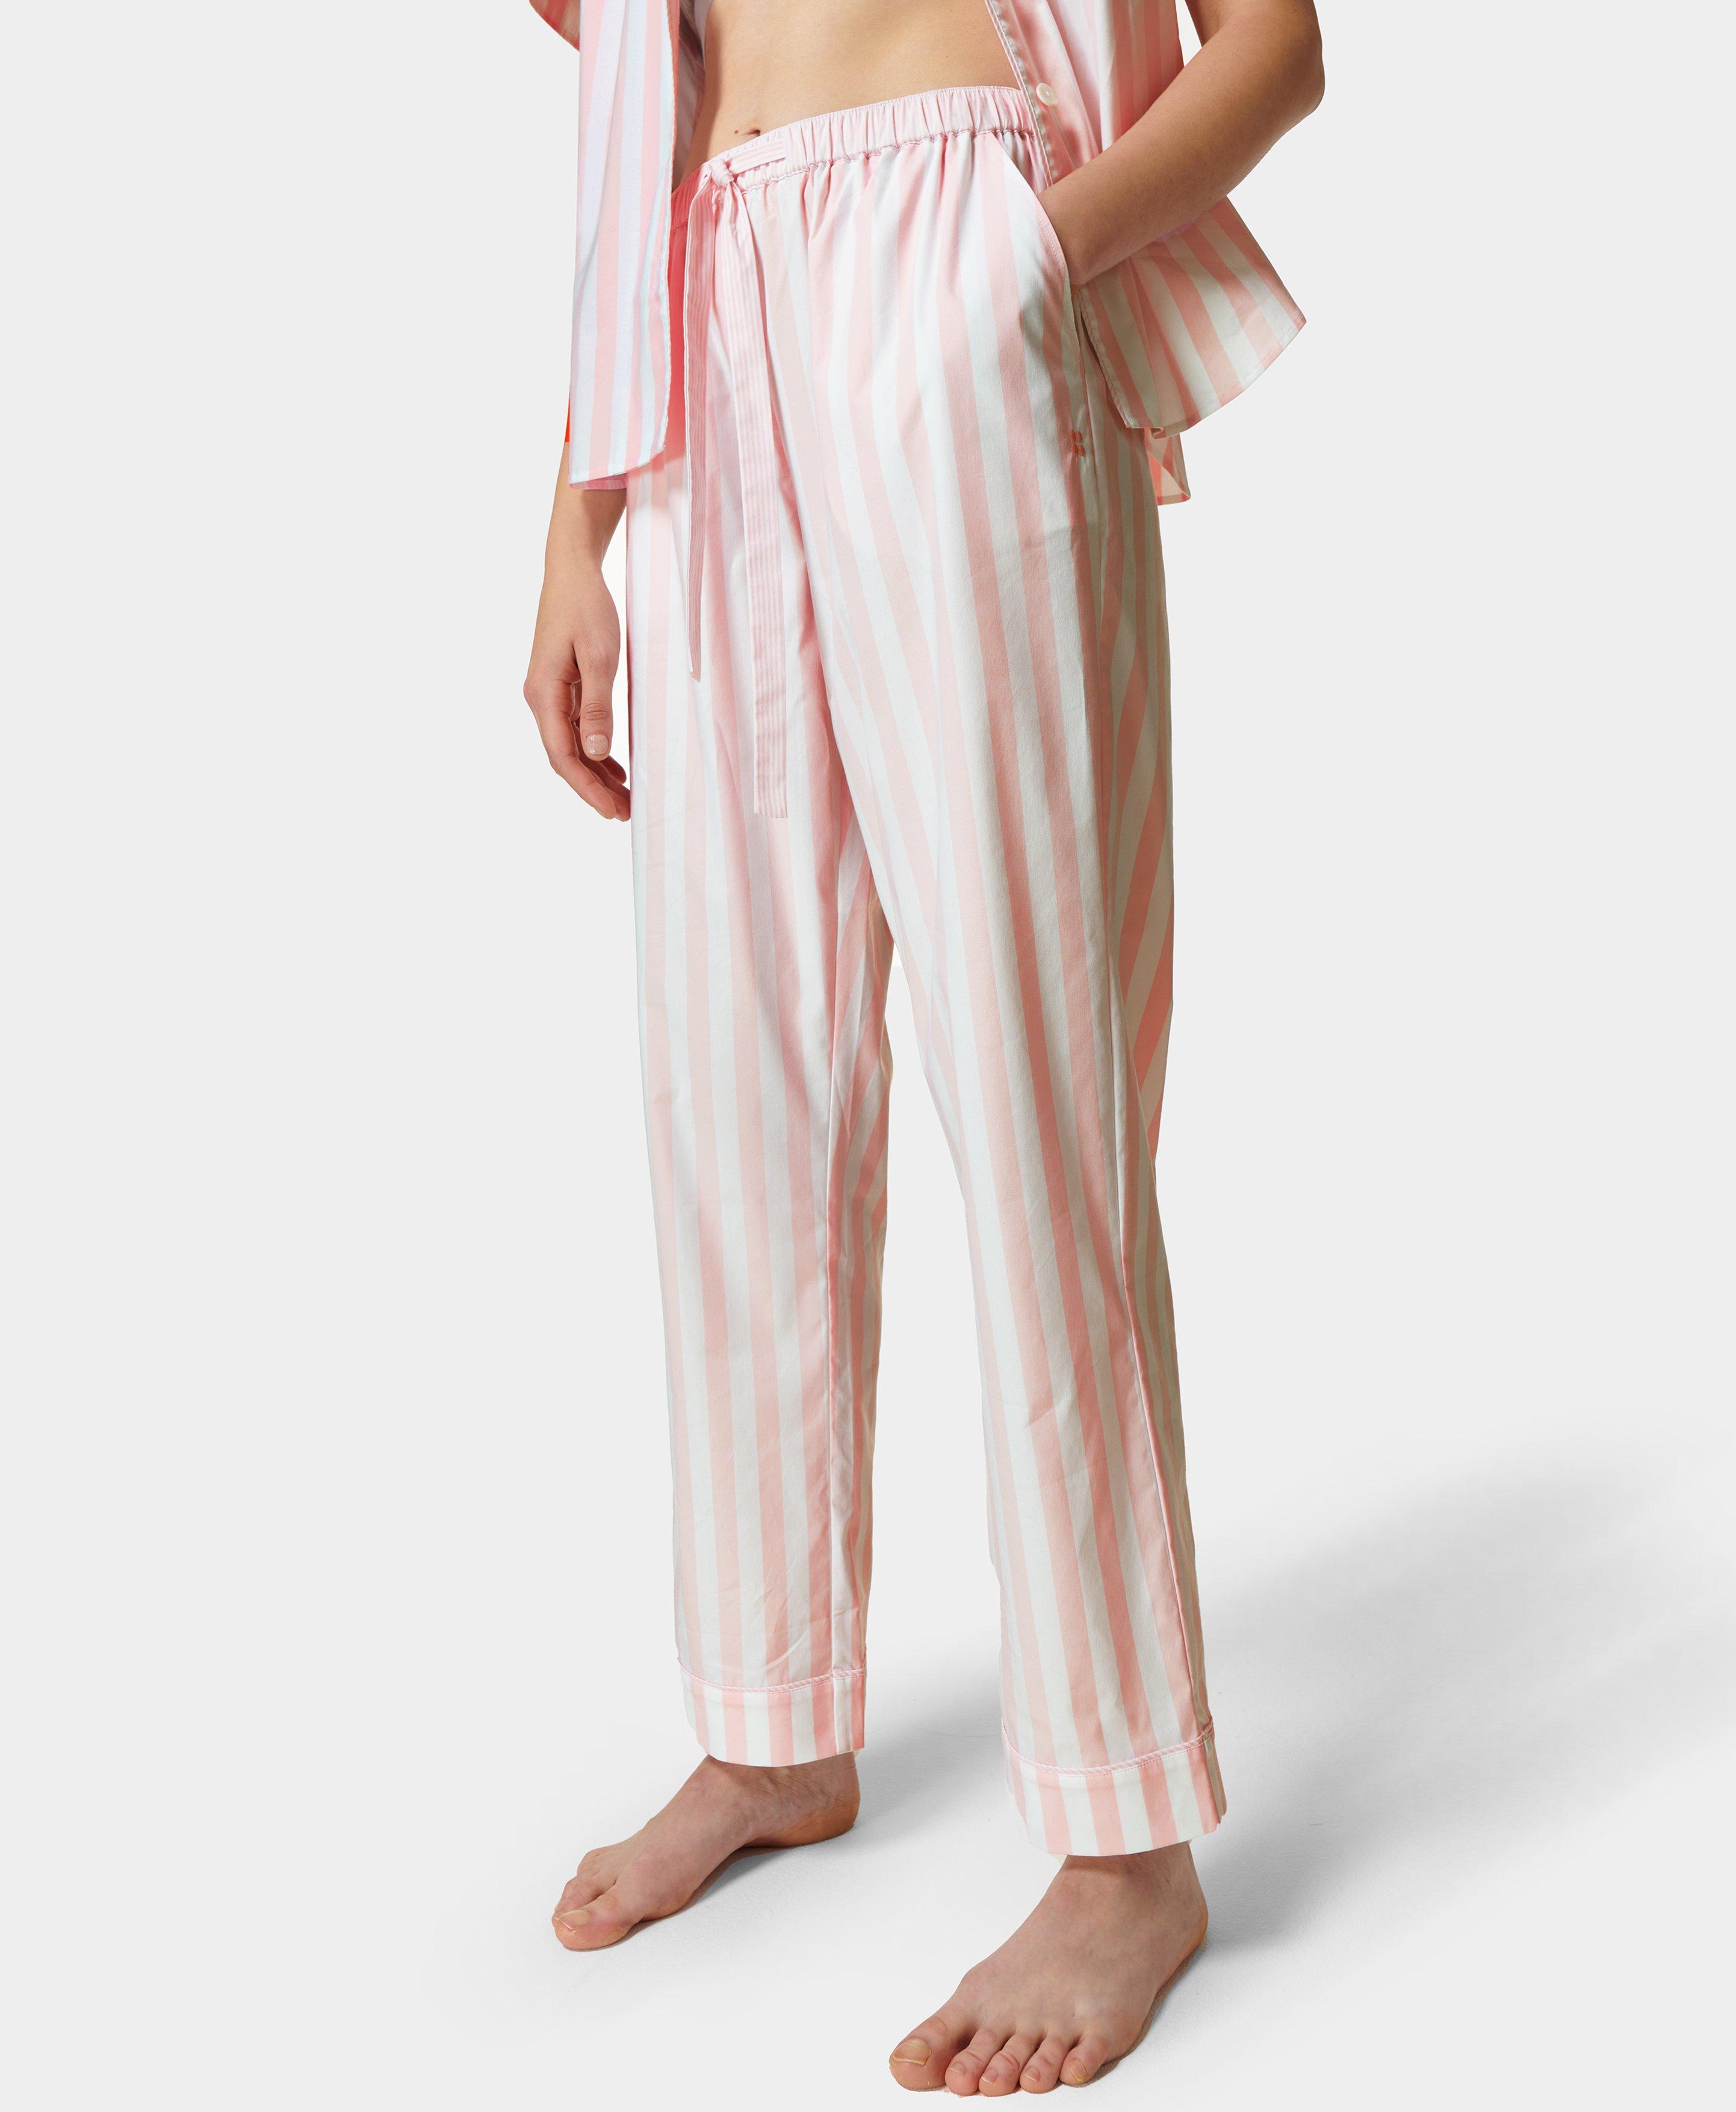 Pajama Pants - Pink/striped - Ladies